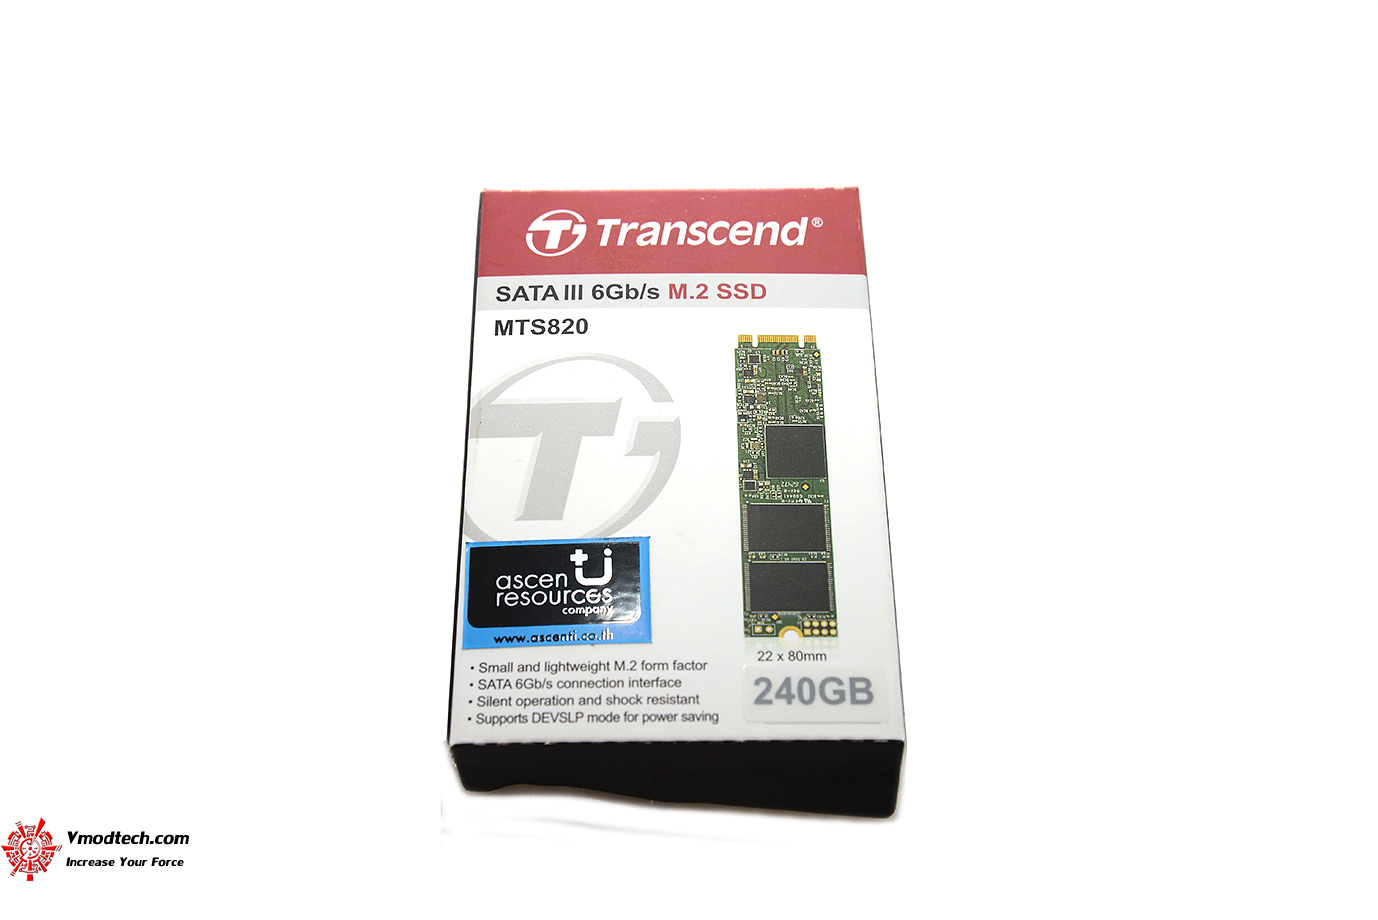 dsc 9977 Transcend SATA III 6Gb/s MTS820 M.2 SSD 240GB Review